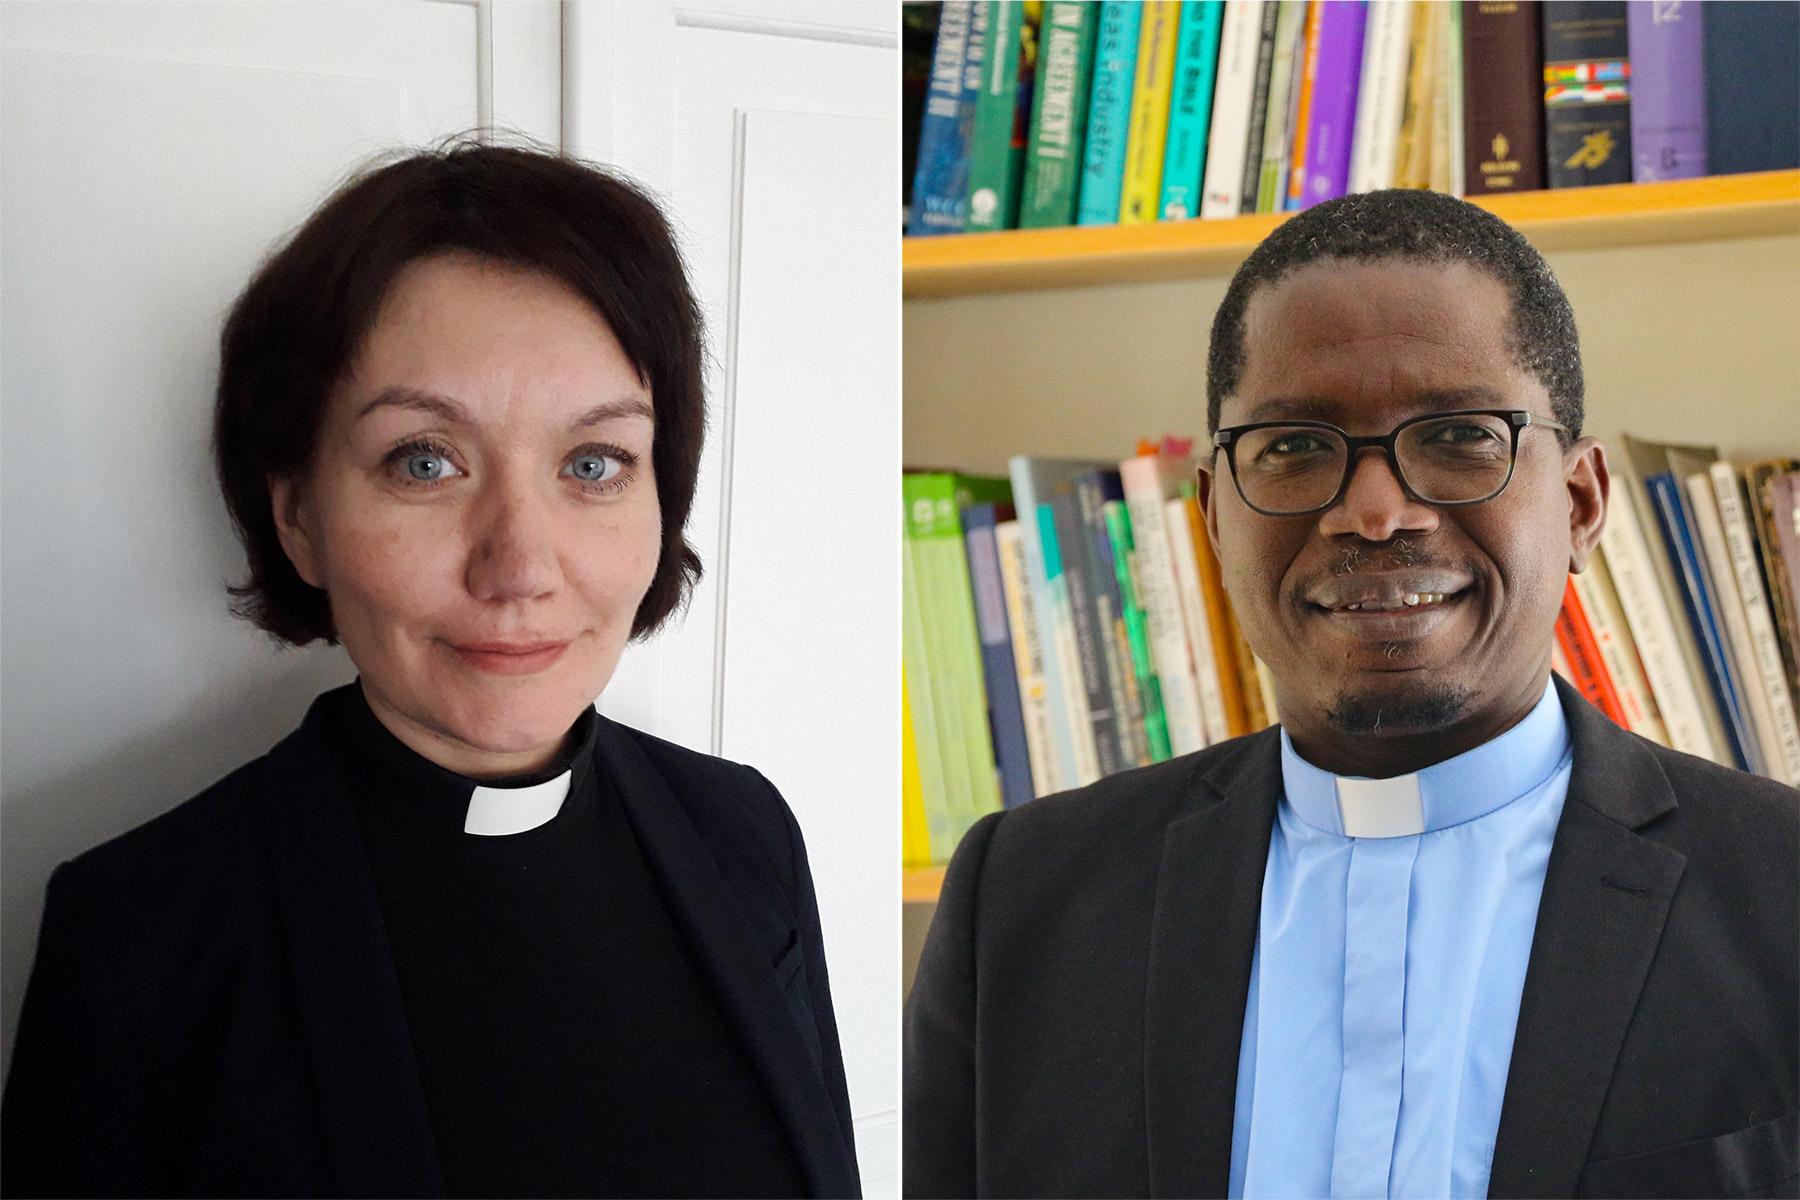 Pfarrerin Anne Burghardt und Pfarrer Dr. Kenneth Mtata kandidieren für das Amt des Generalsekretärs/der Generalsekretärin.